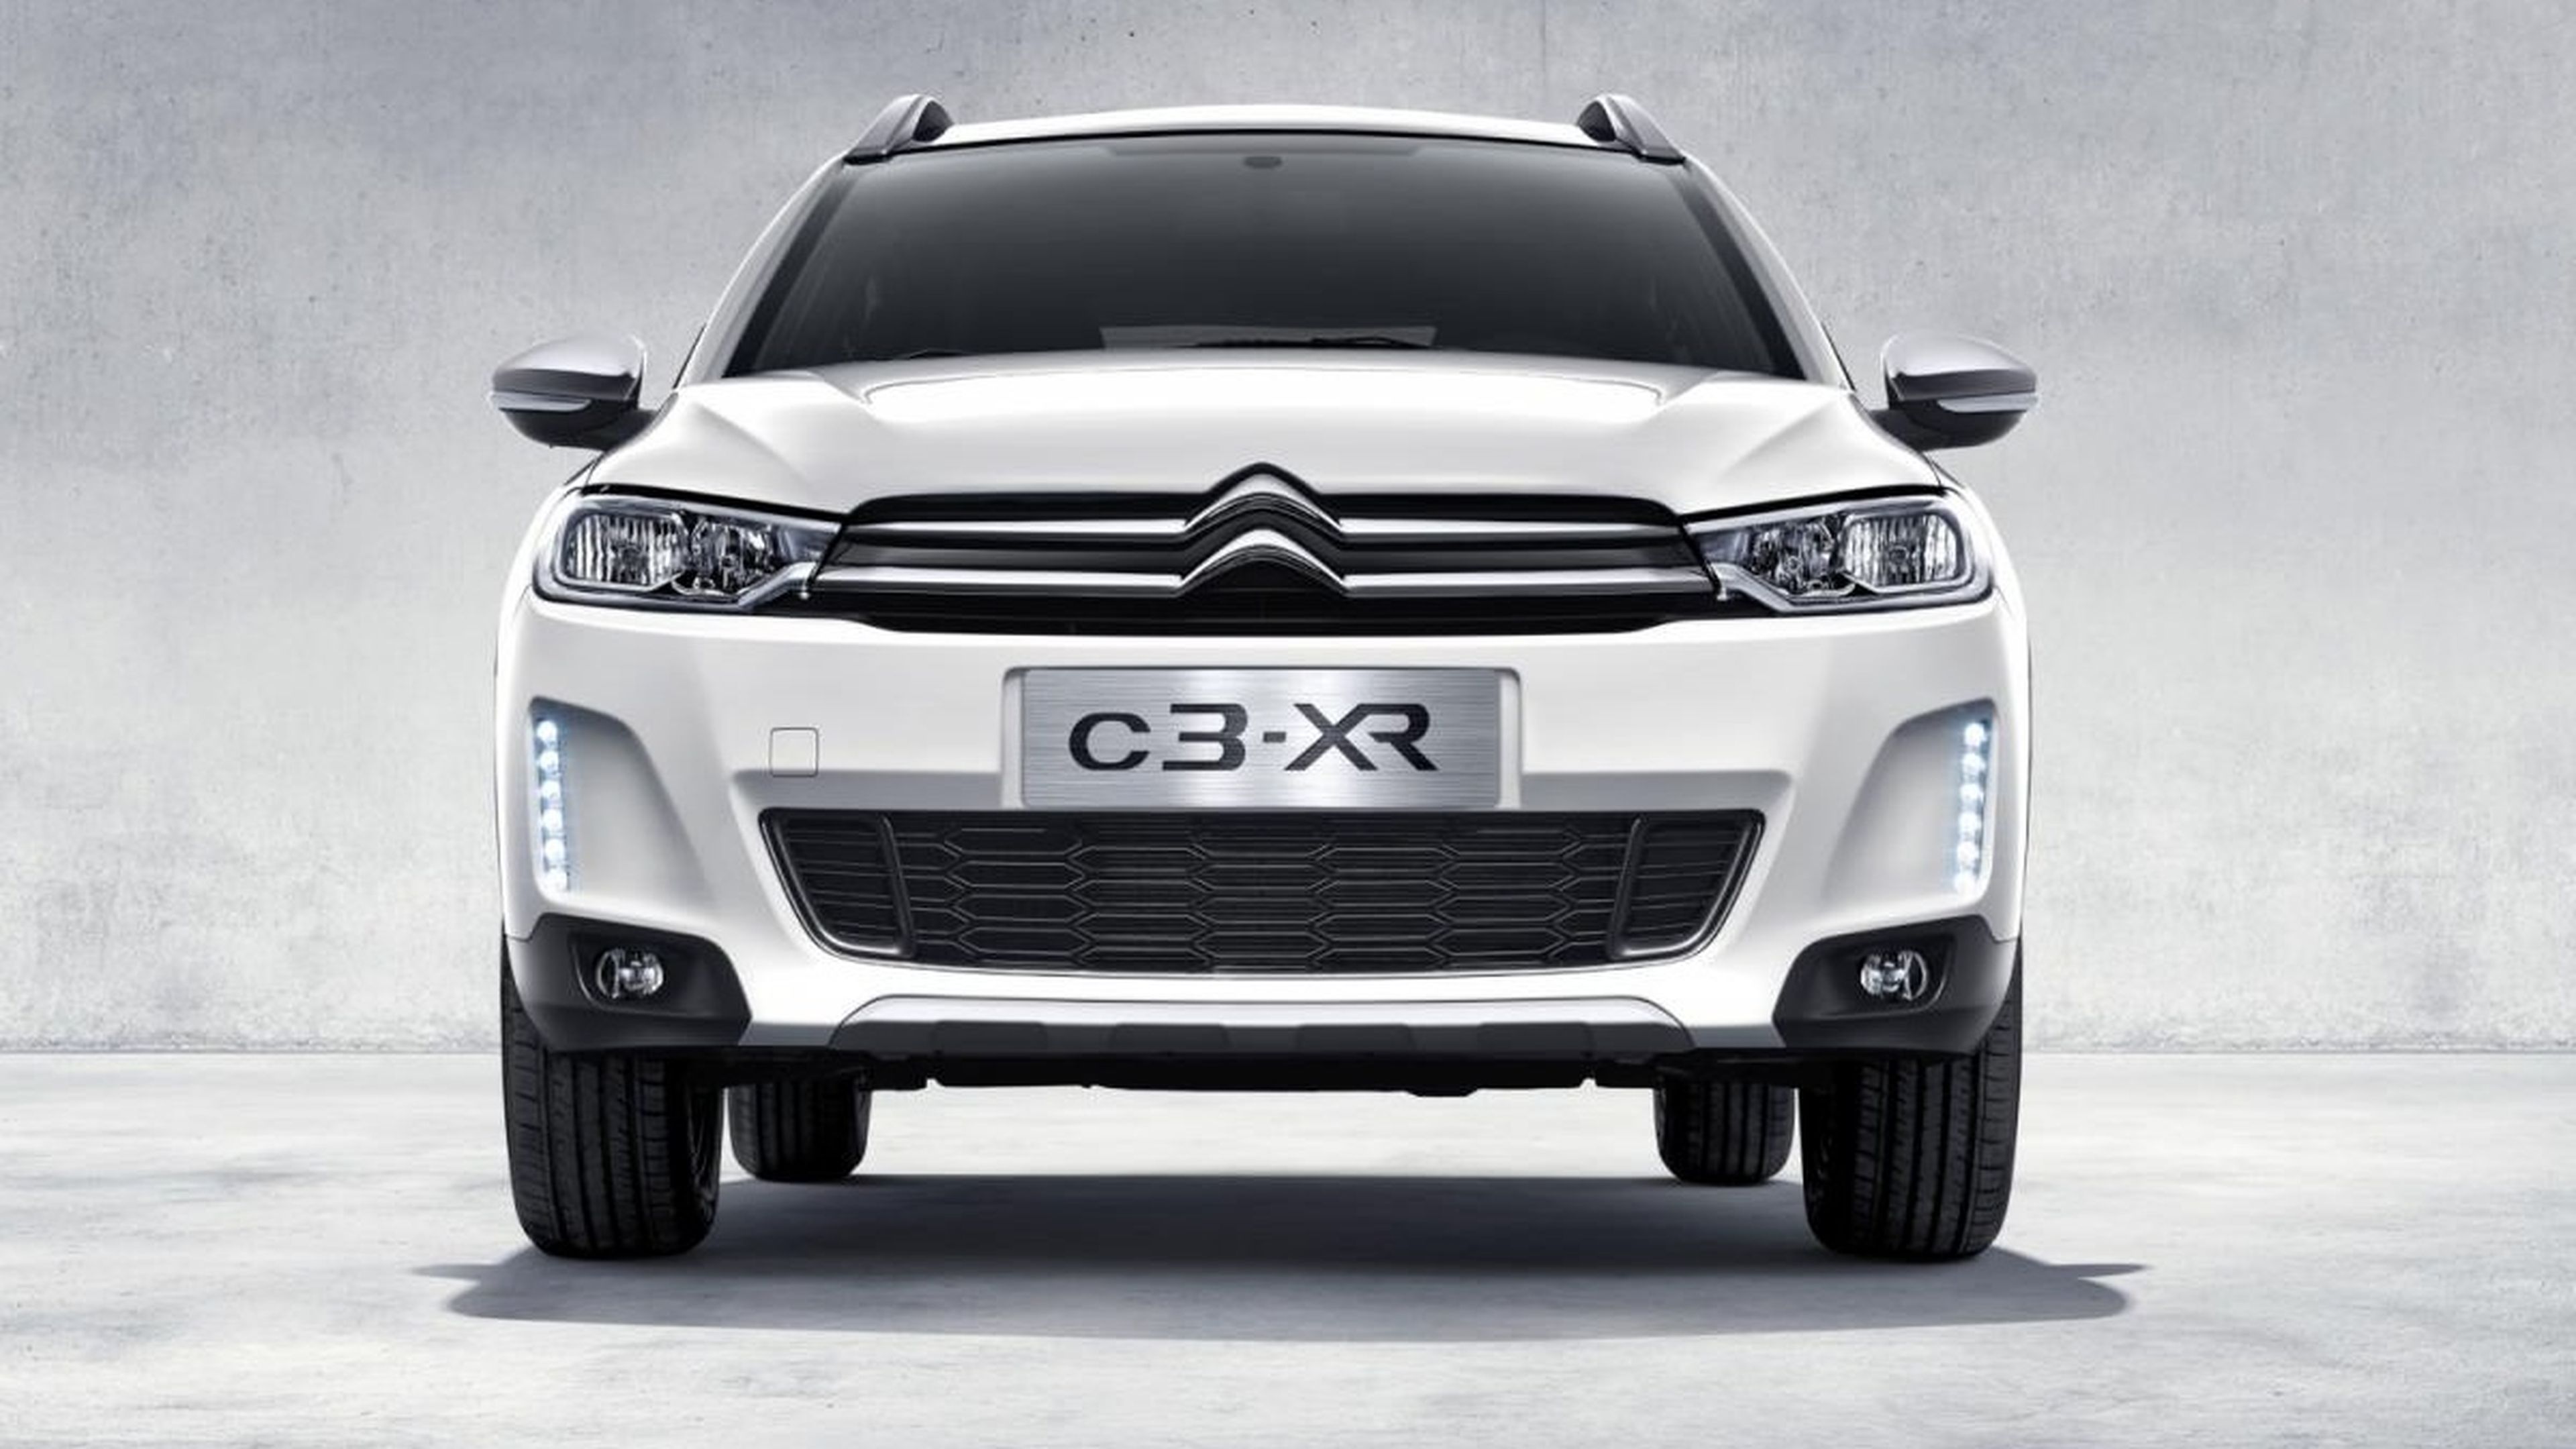 Citroën C3-XR: un SUV para el mercado chino